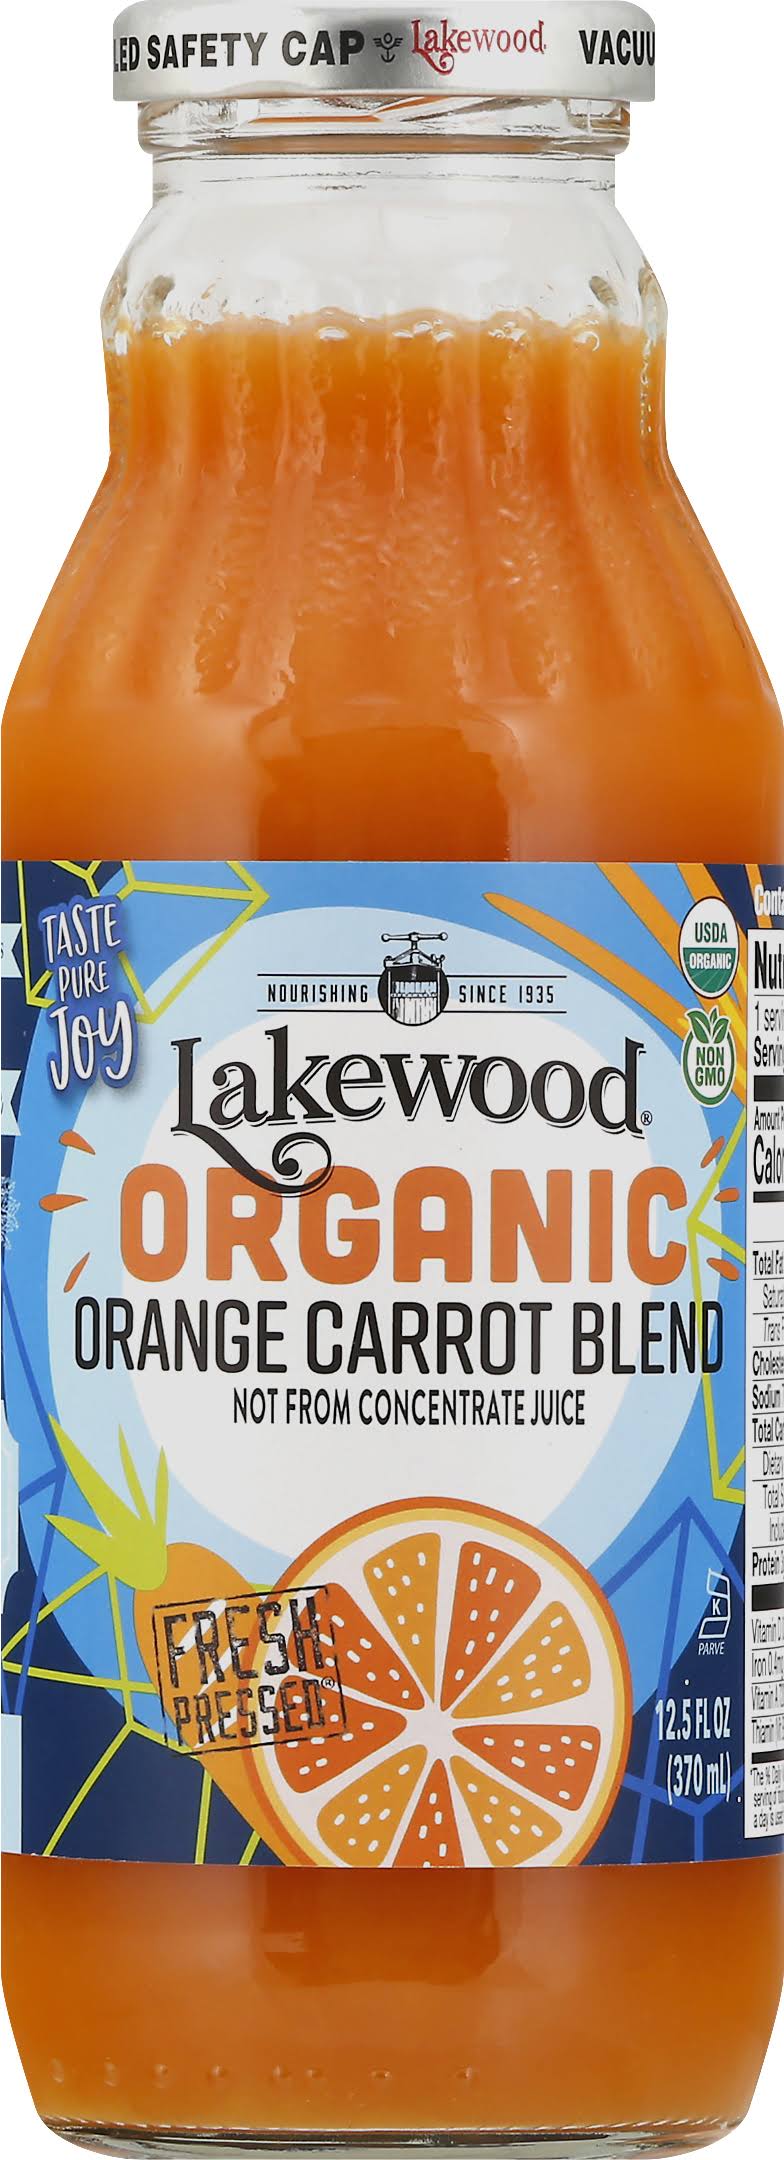 Lakewood Organic Orange Carrot Juice - 12.5oz